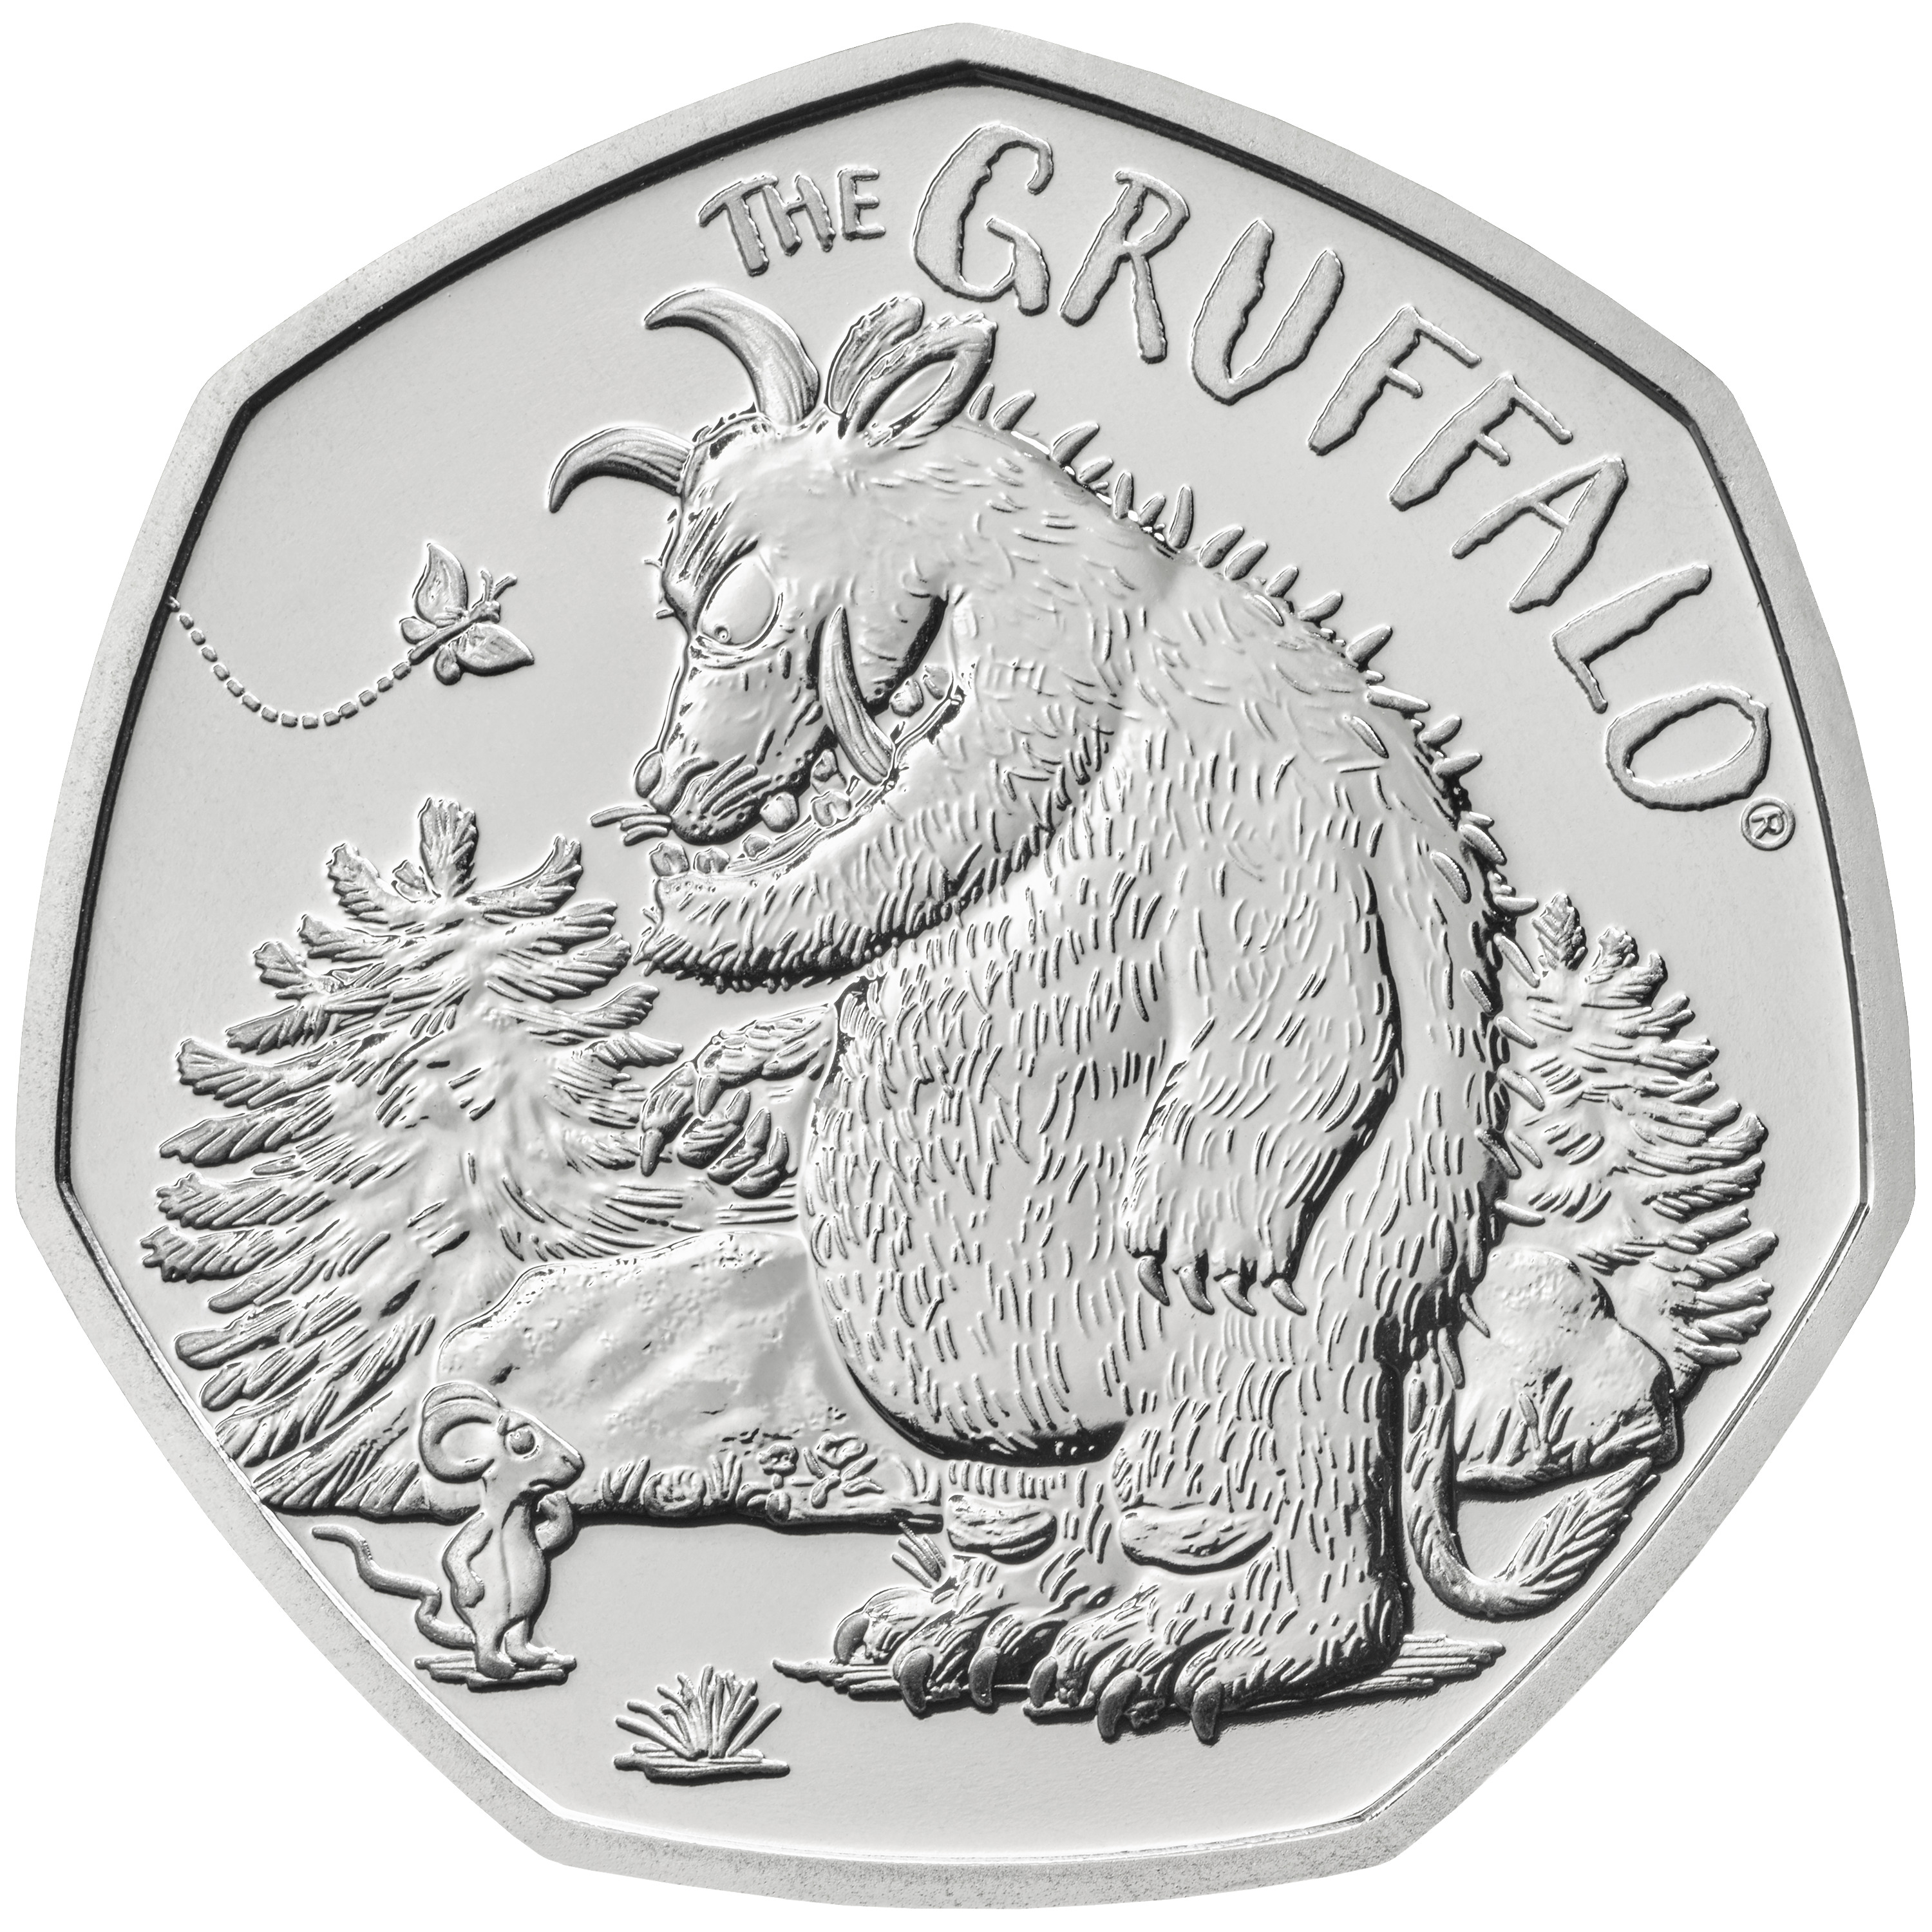 Gruffalo coin